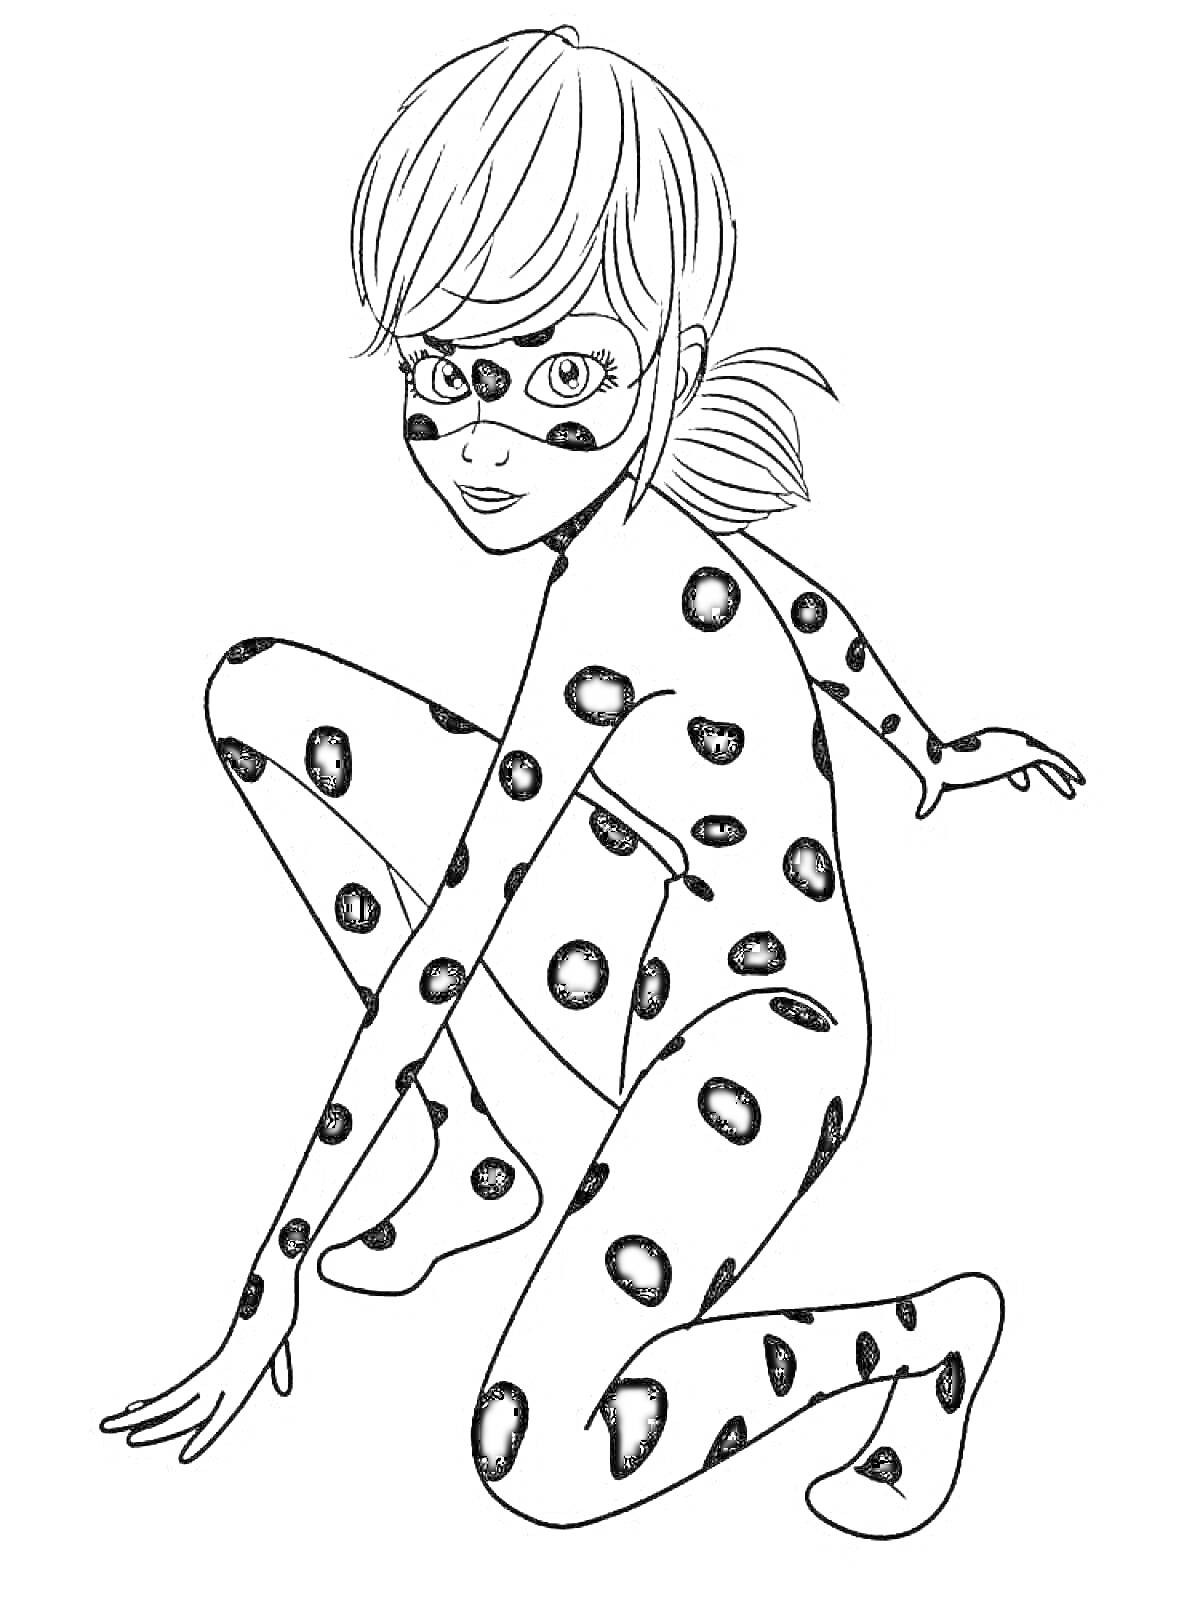 Раскраска Девушка в костюме с черными пятнами и маской на лице, на коленях